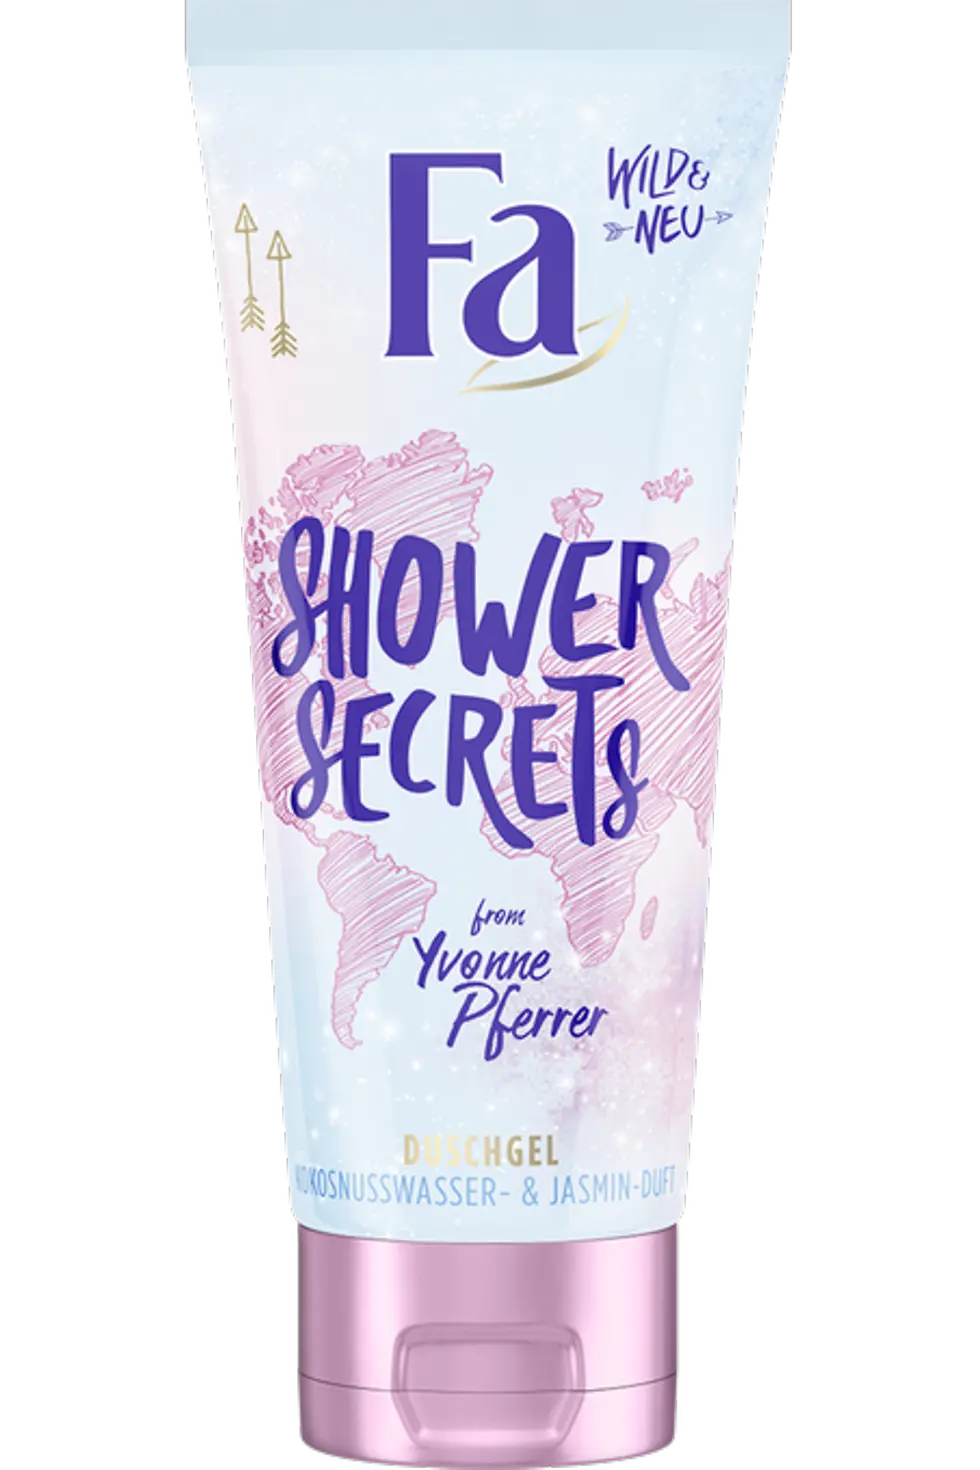 Fa Shower Secrets Duschgel from Yvonne Pferrer